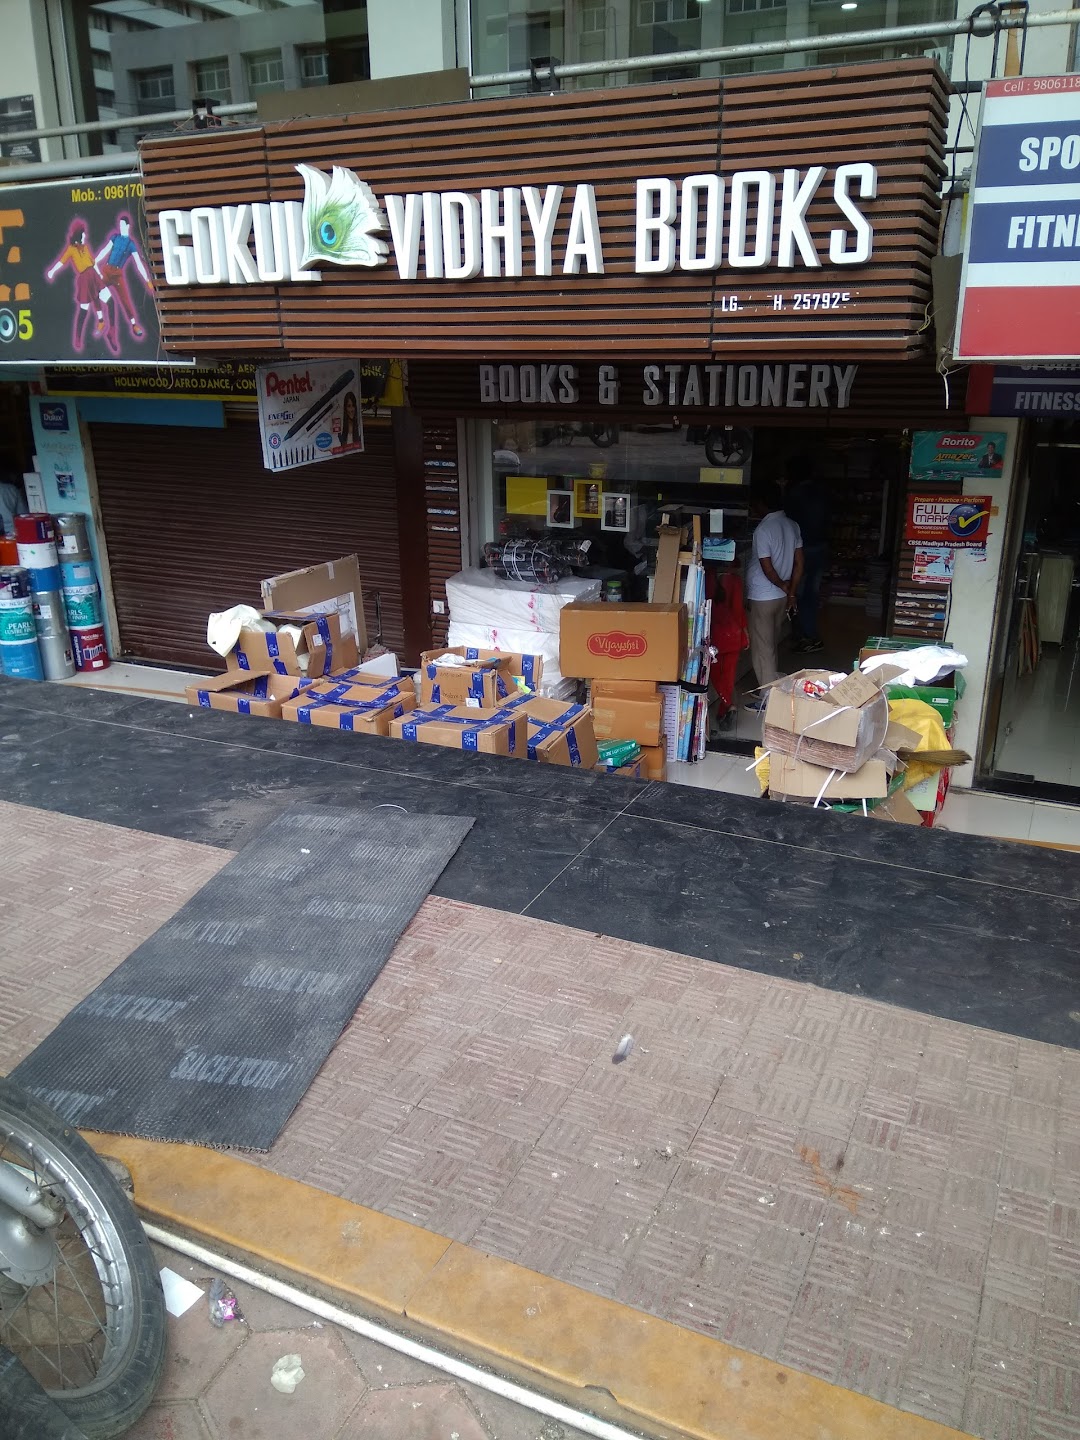 Gokul Vidhya Books